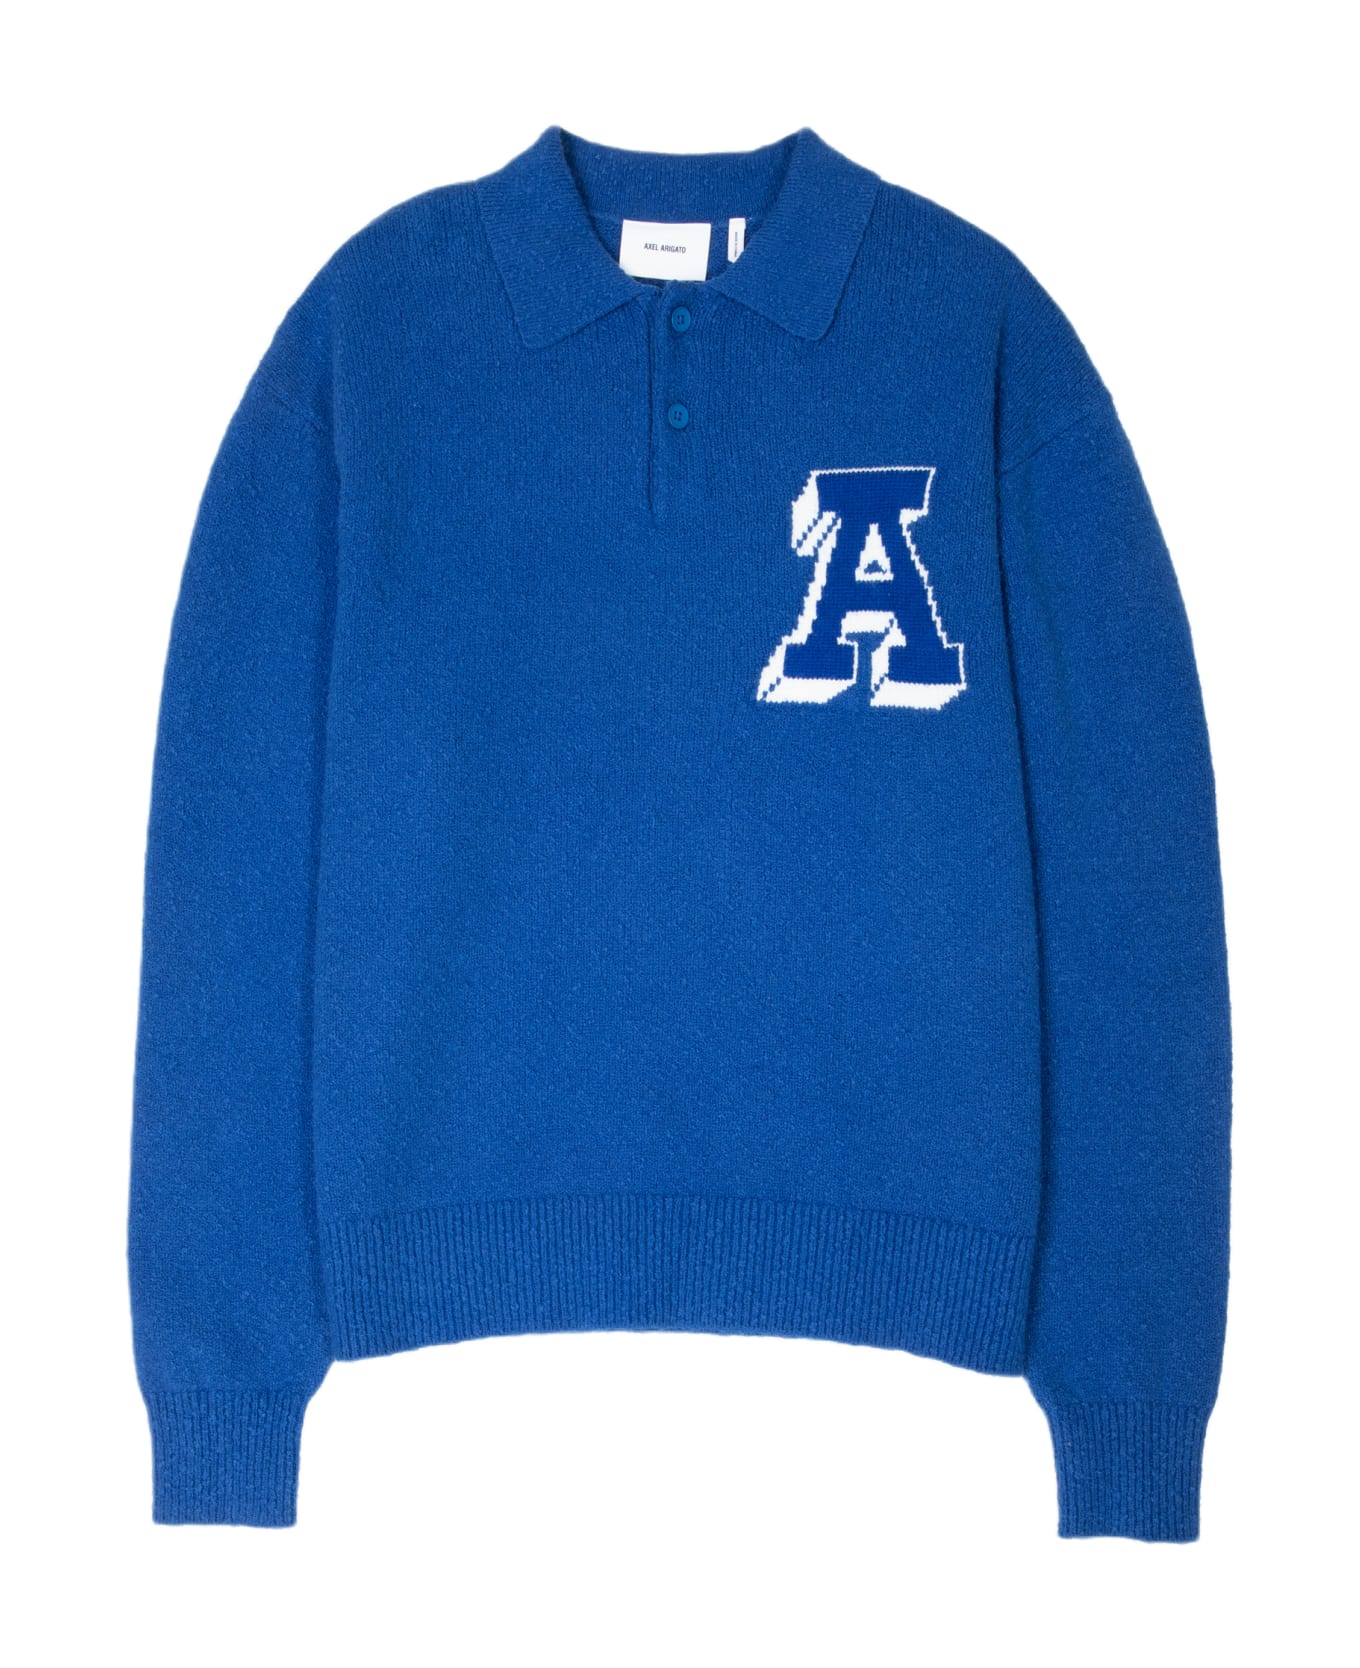 Axel Arigato Team Polo Sweater Royal blue cotton blend polo sweater - Team Polo Sweater - Blu